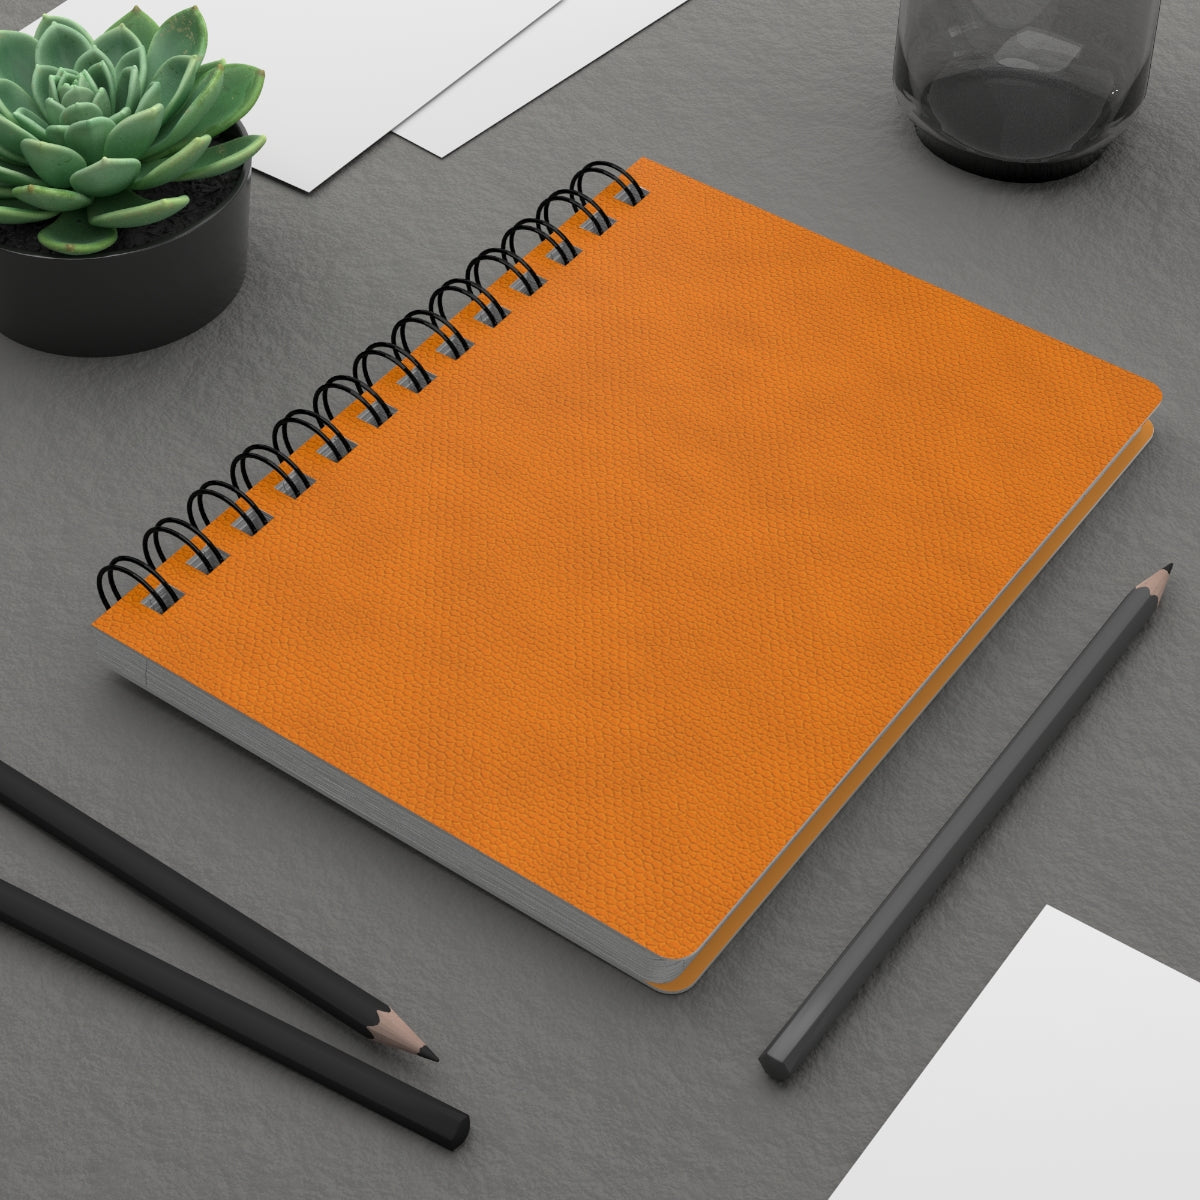 Orange Leather Print Spiral Bound Journal